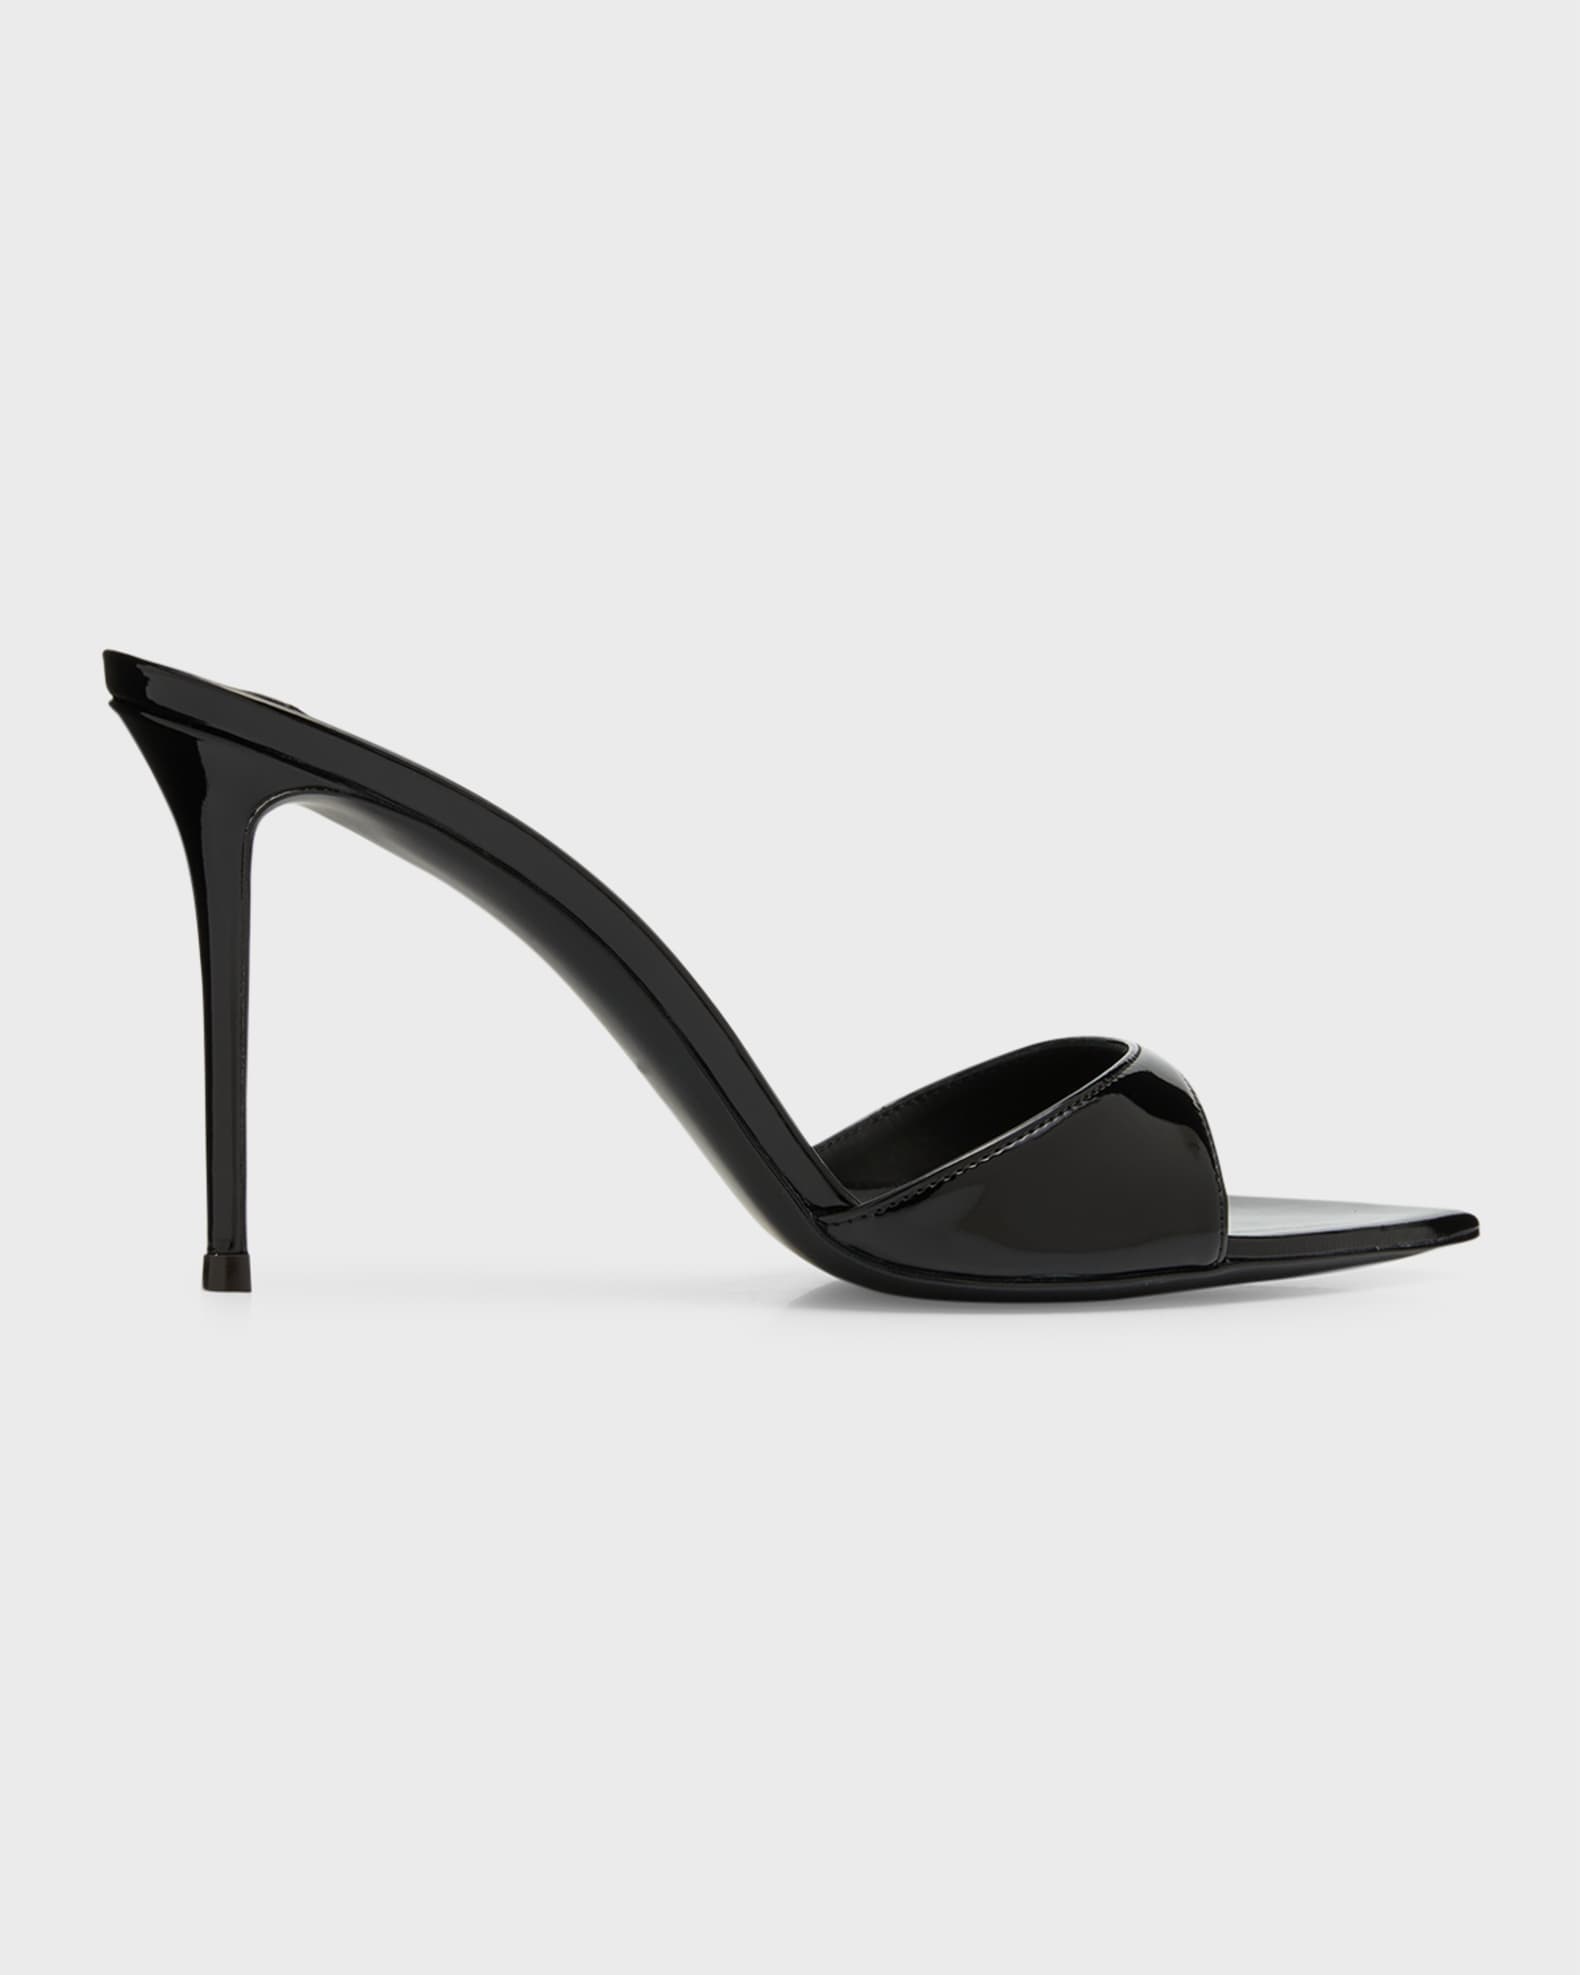 Giuseppe Zanotti Intrigo Patent Stiletto Mule Sandals | Neiman Marcus